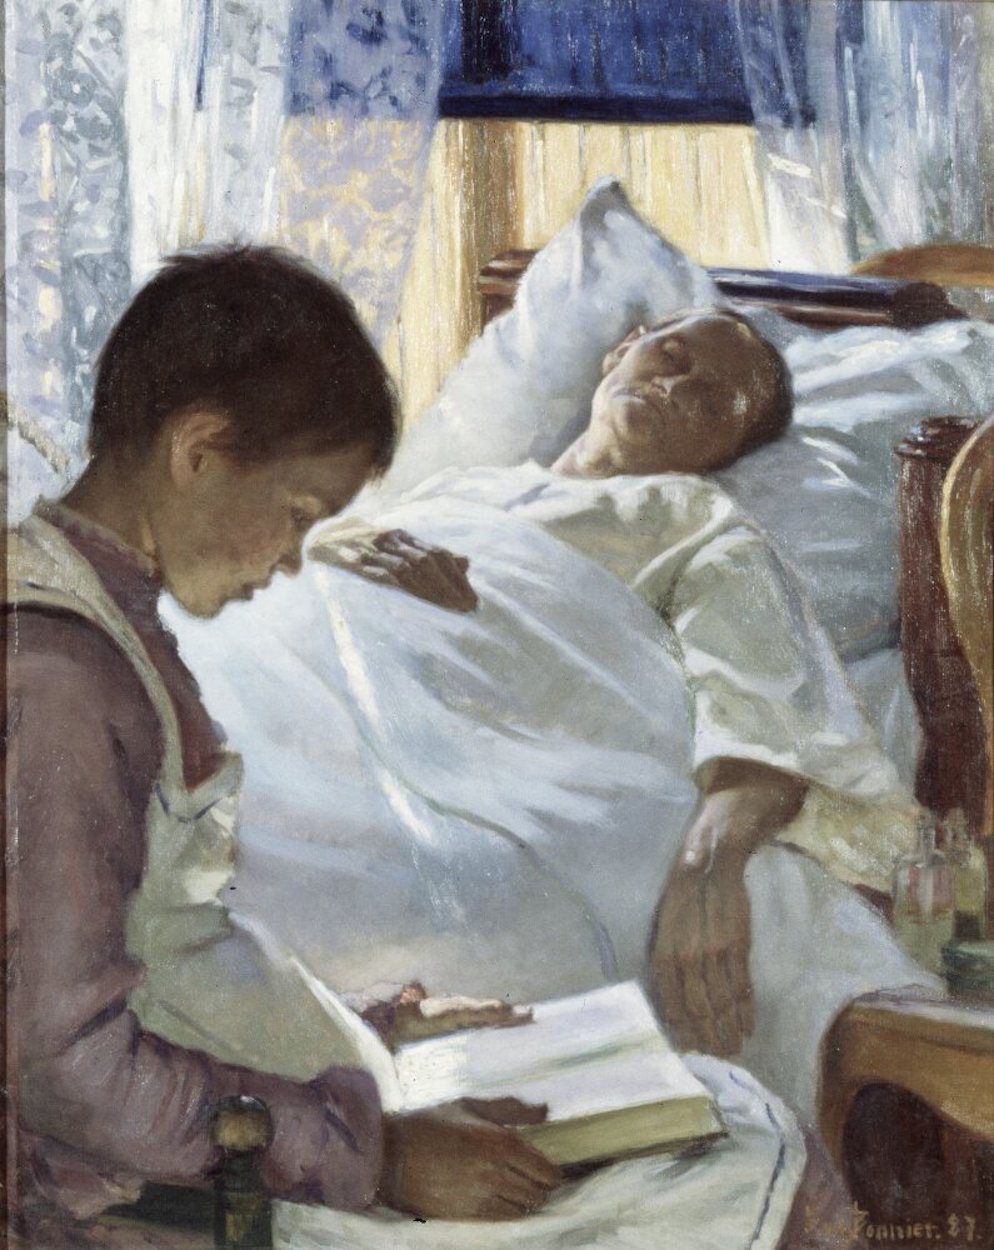 憂傷的沈思 by Eva Bonnier - 1887 年 - 80 x 64 公分 